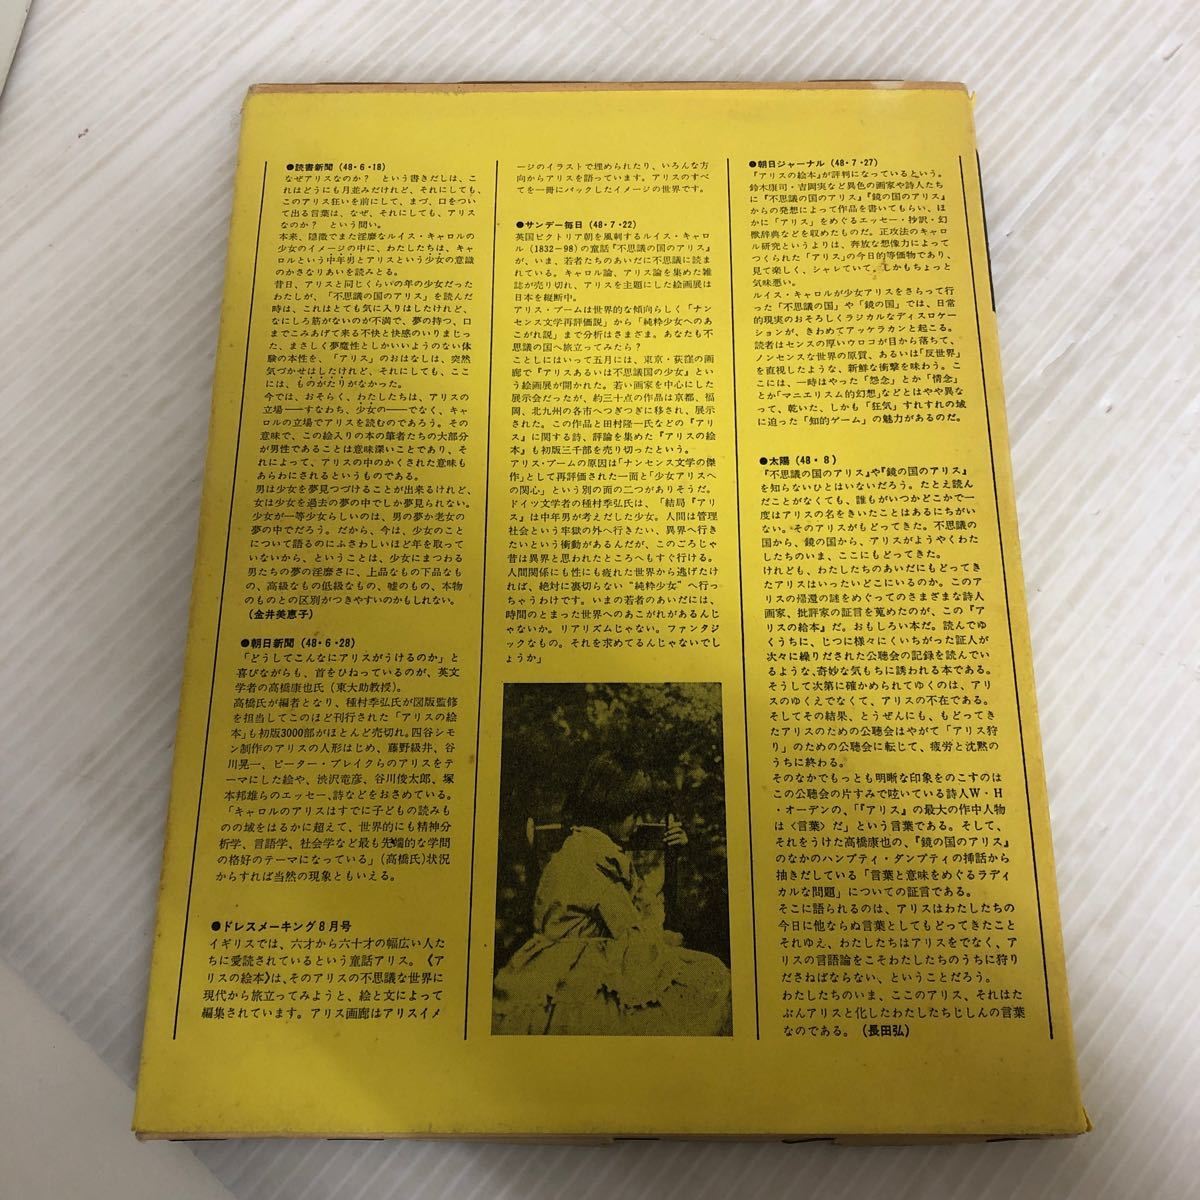 K-ш/ Alice. книга с картинками Alice. тайна . мир 1978 год 3 месяц 31 день no. 2 версия no. 3. выпуск сборник / высота ... map версия ../ Tanemura Suehiro . бог фирма 